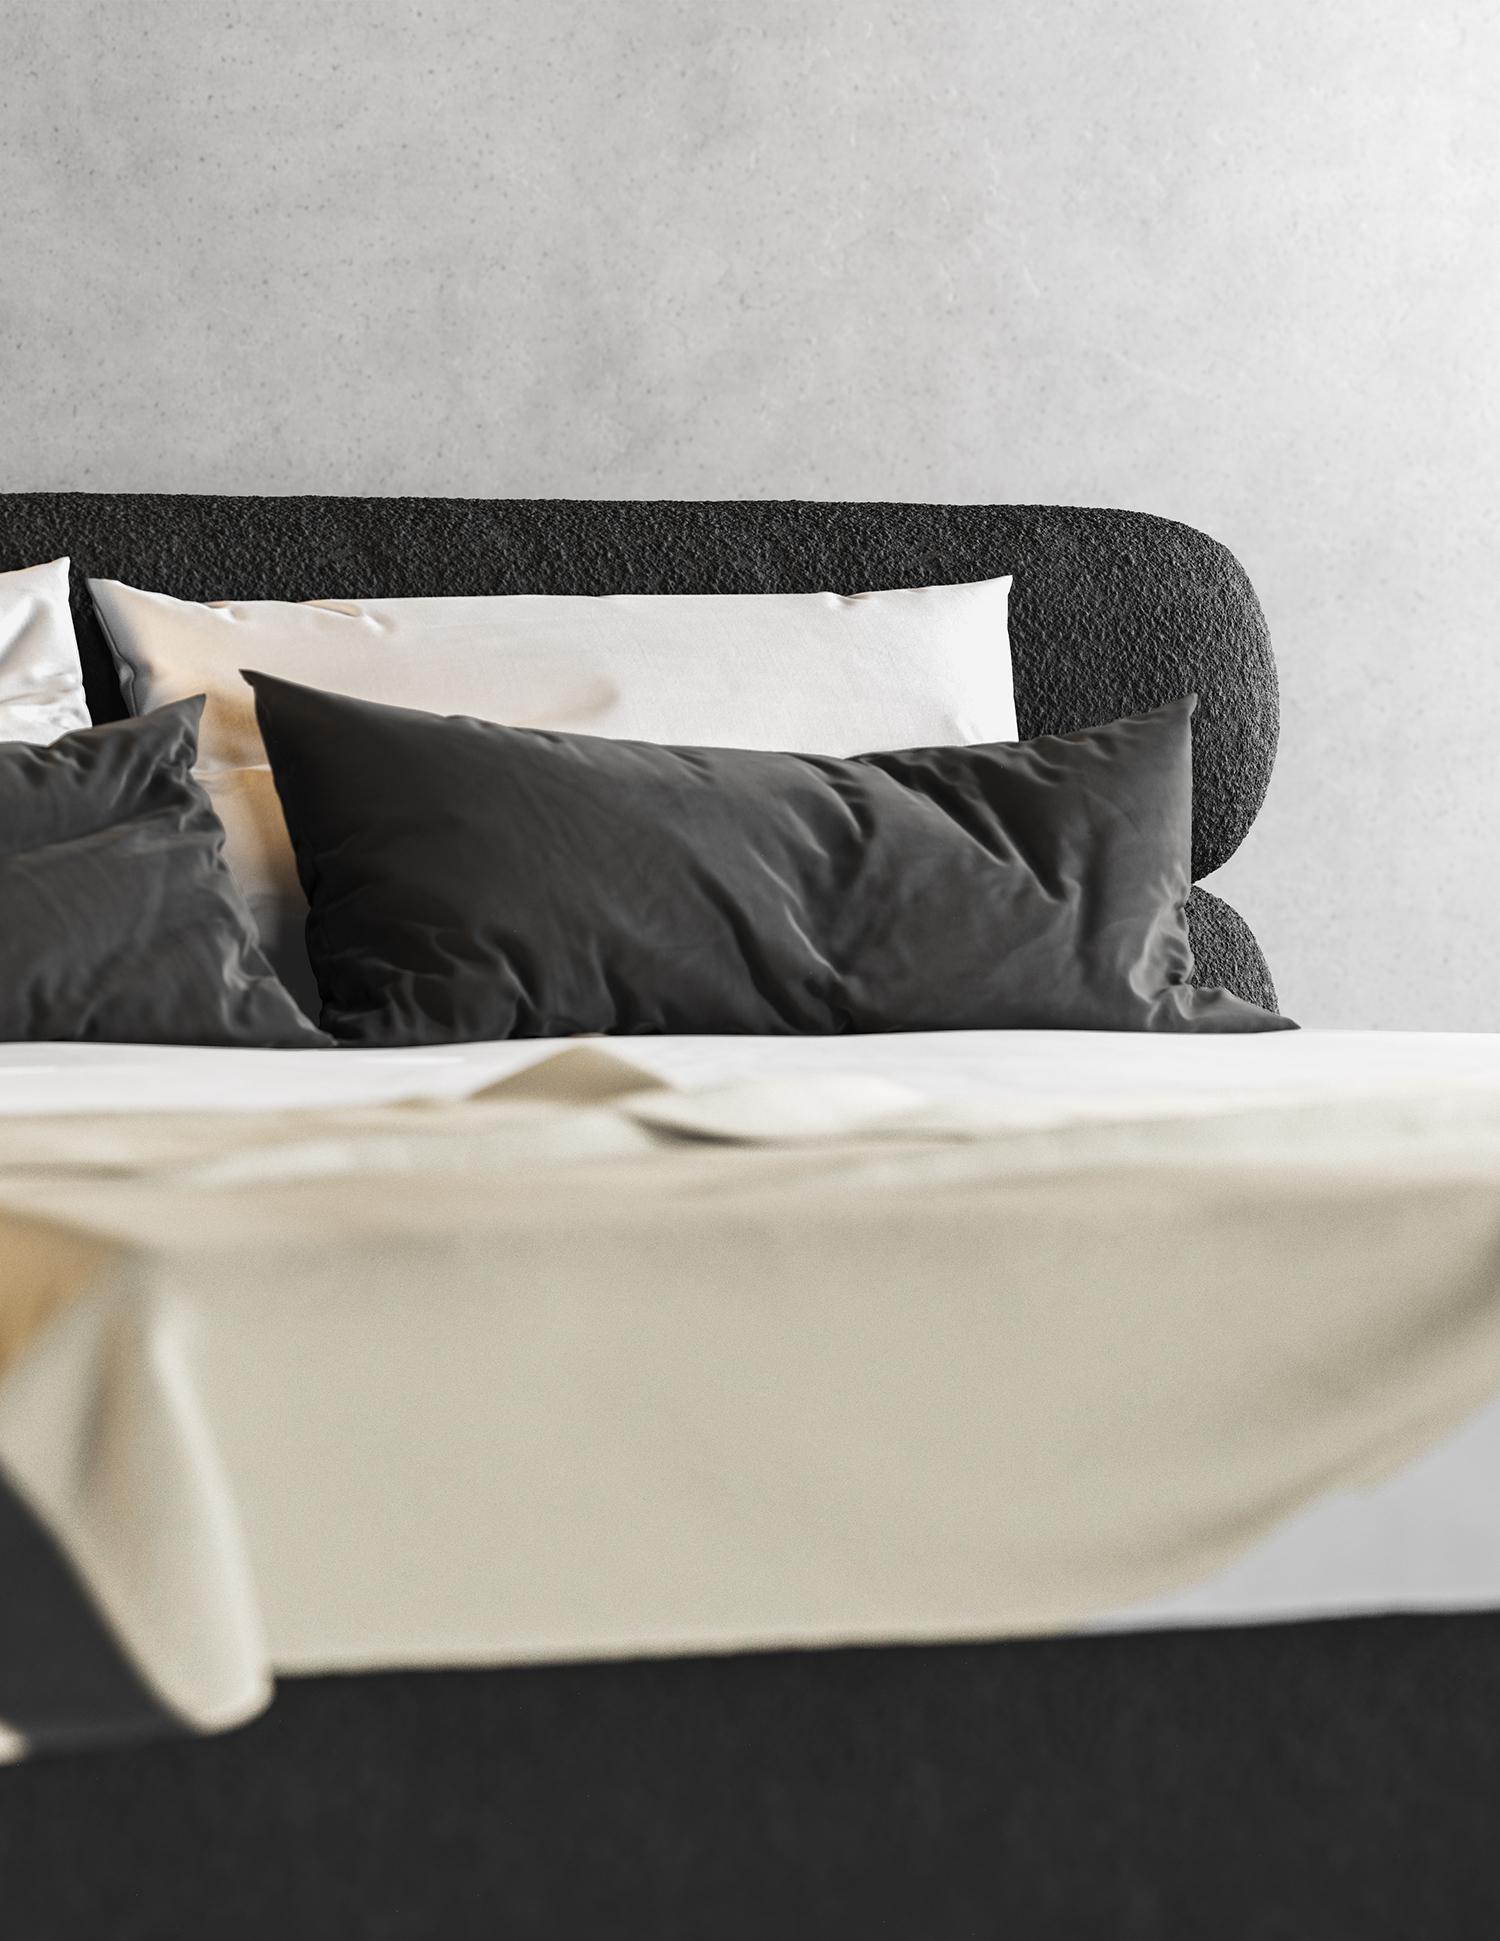 Unser modernes Dip-Bett ist die perfekte Ergänzung für jedes moderne Schlafzimmer.

Aus hochwertigen Materialien gefertigt, ist dieses Bett nicht nur stilvoll, sondern auch robust und langlebig. Das schlichte und minimalistische Design zeichnet sich